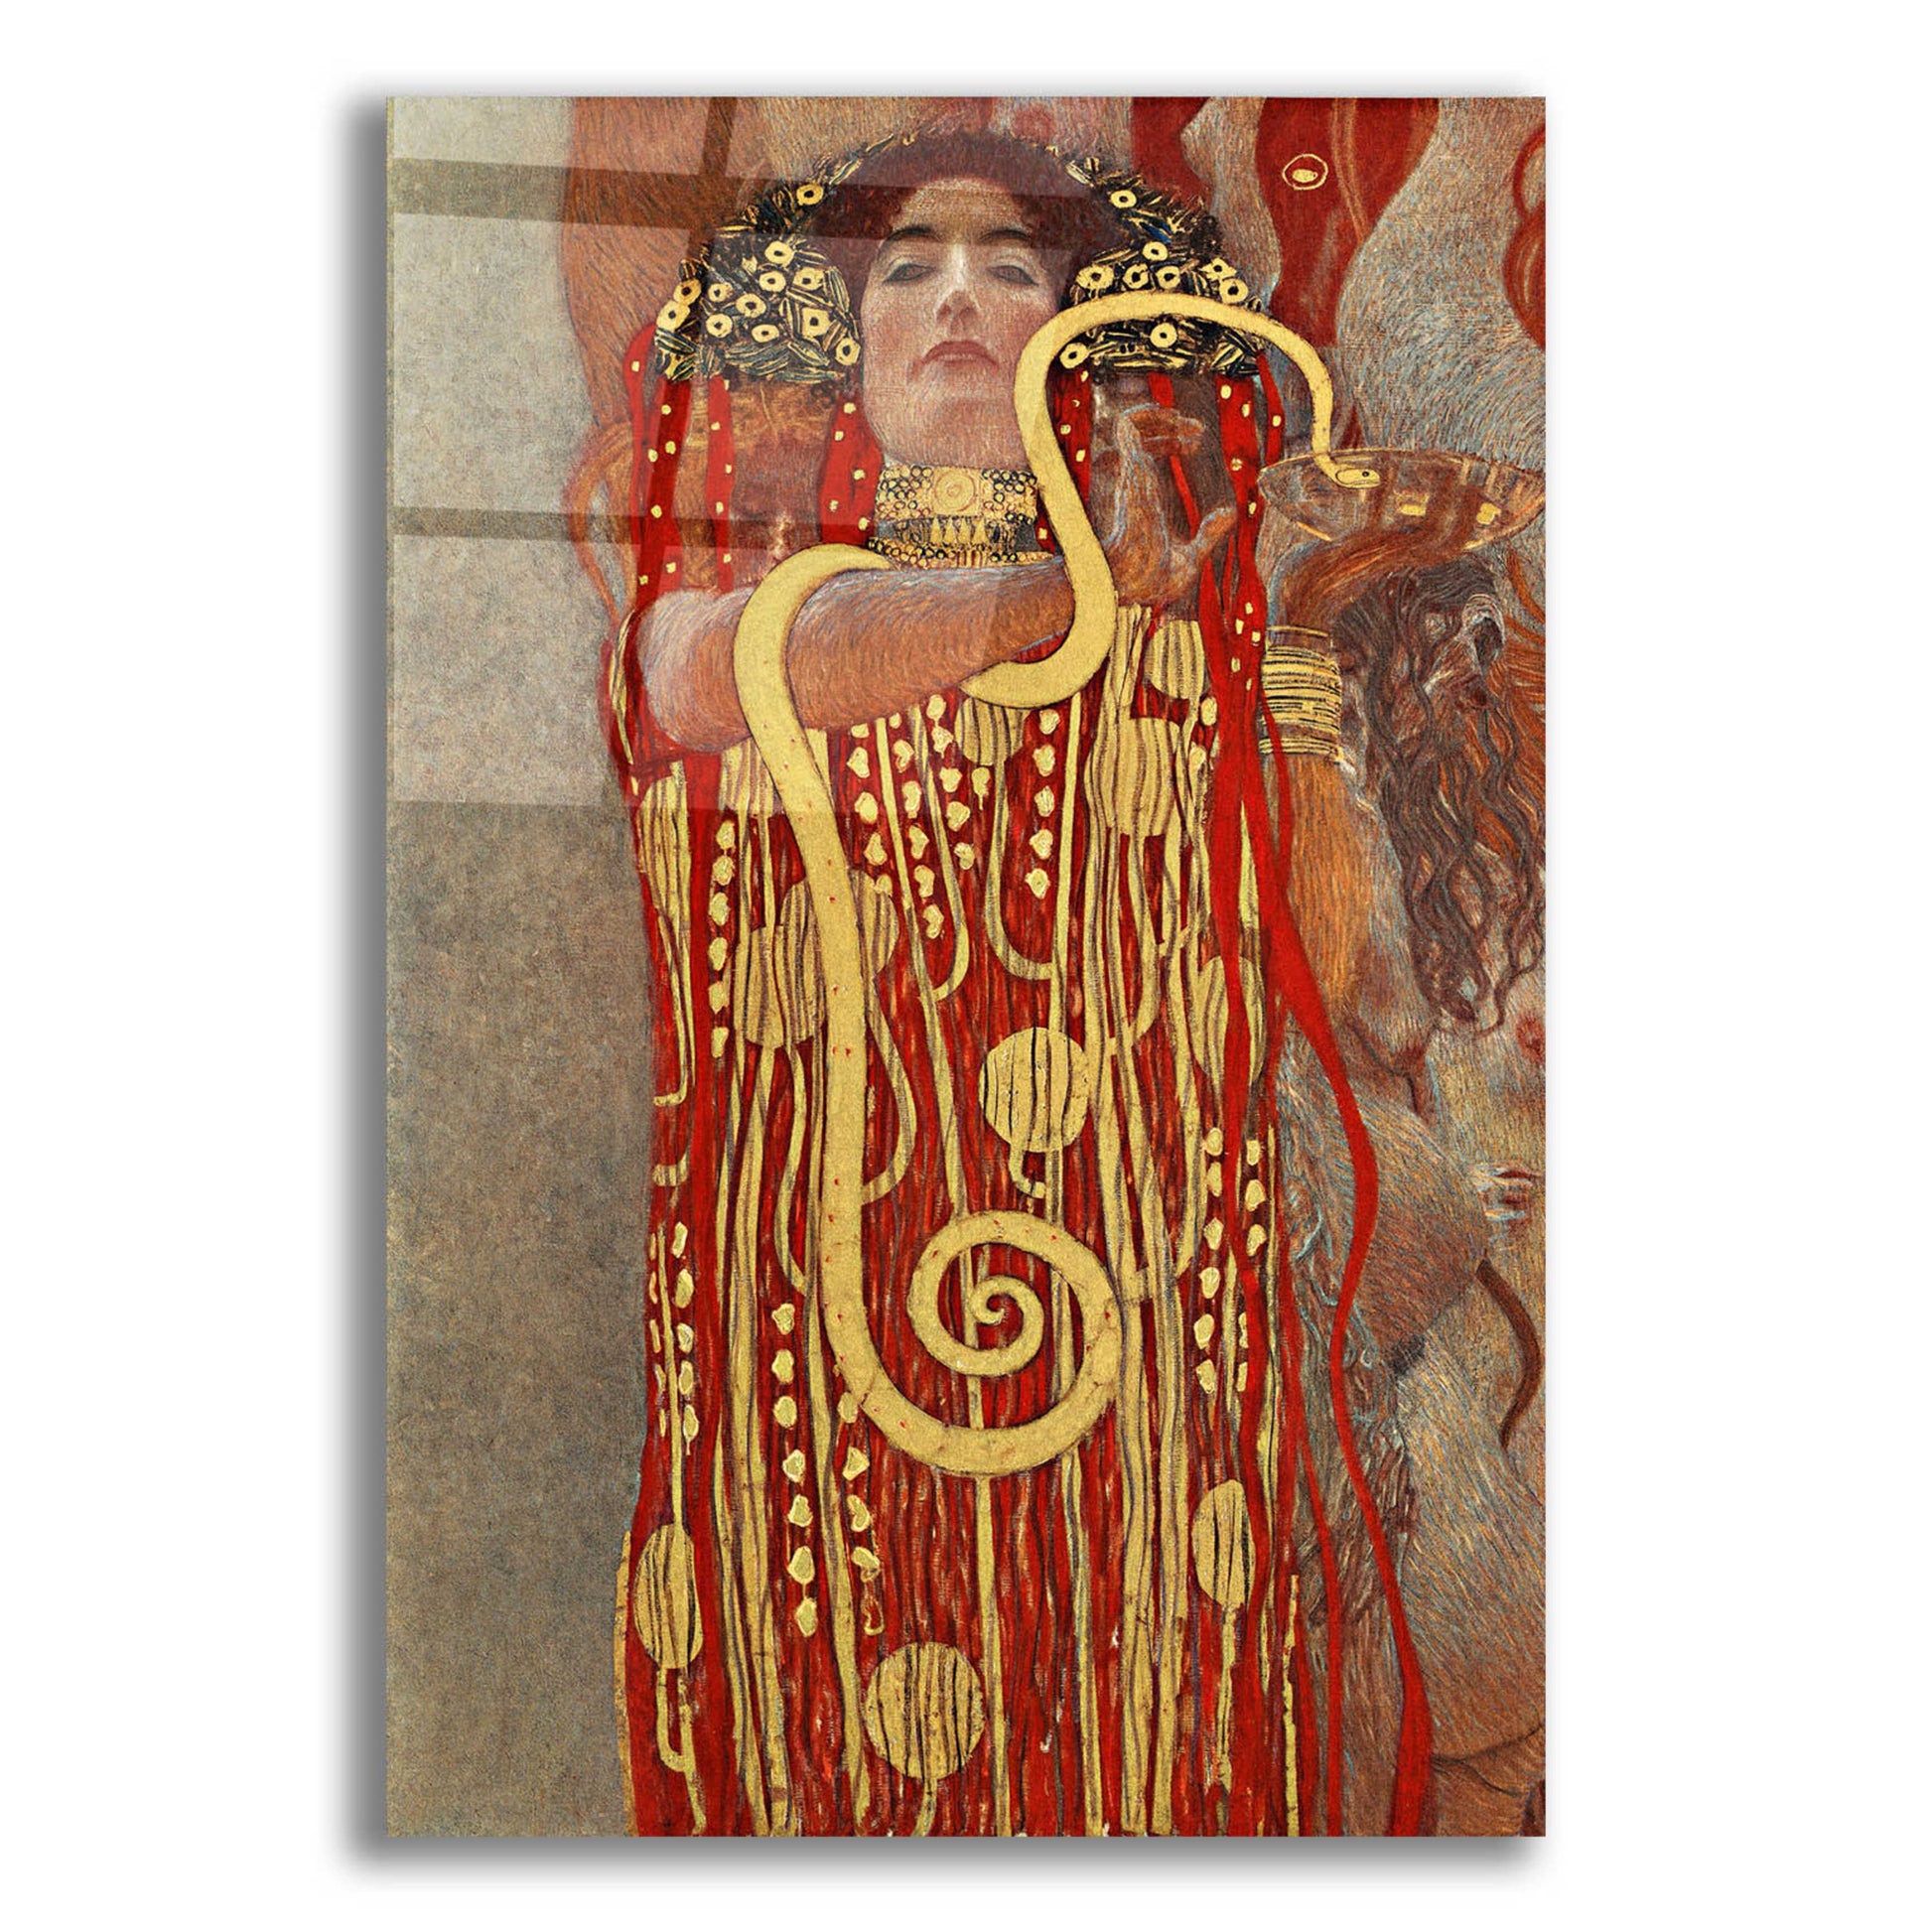 Epic Art 'Hygieia' by Gustav Klimt, Acrylic Glass Wall Art,16x24